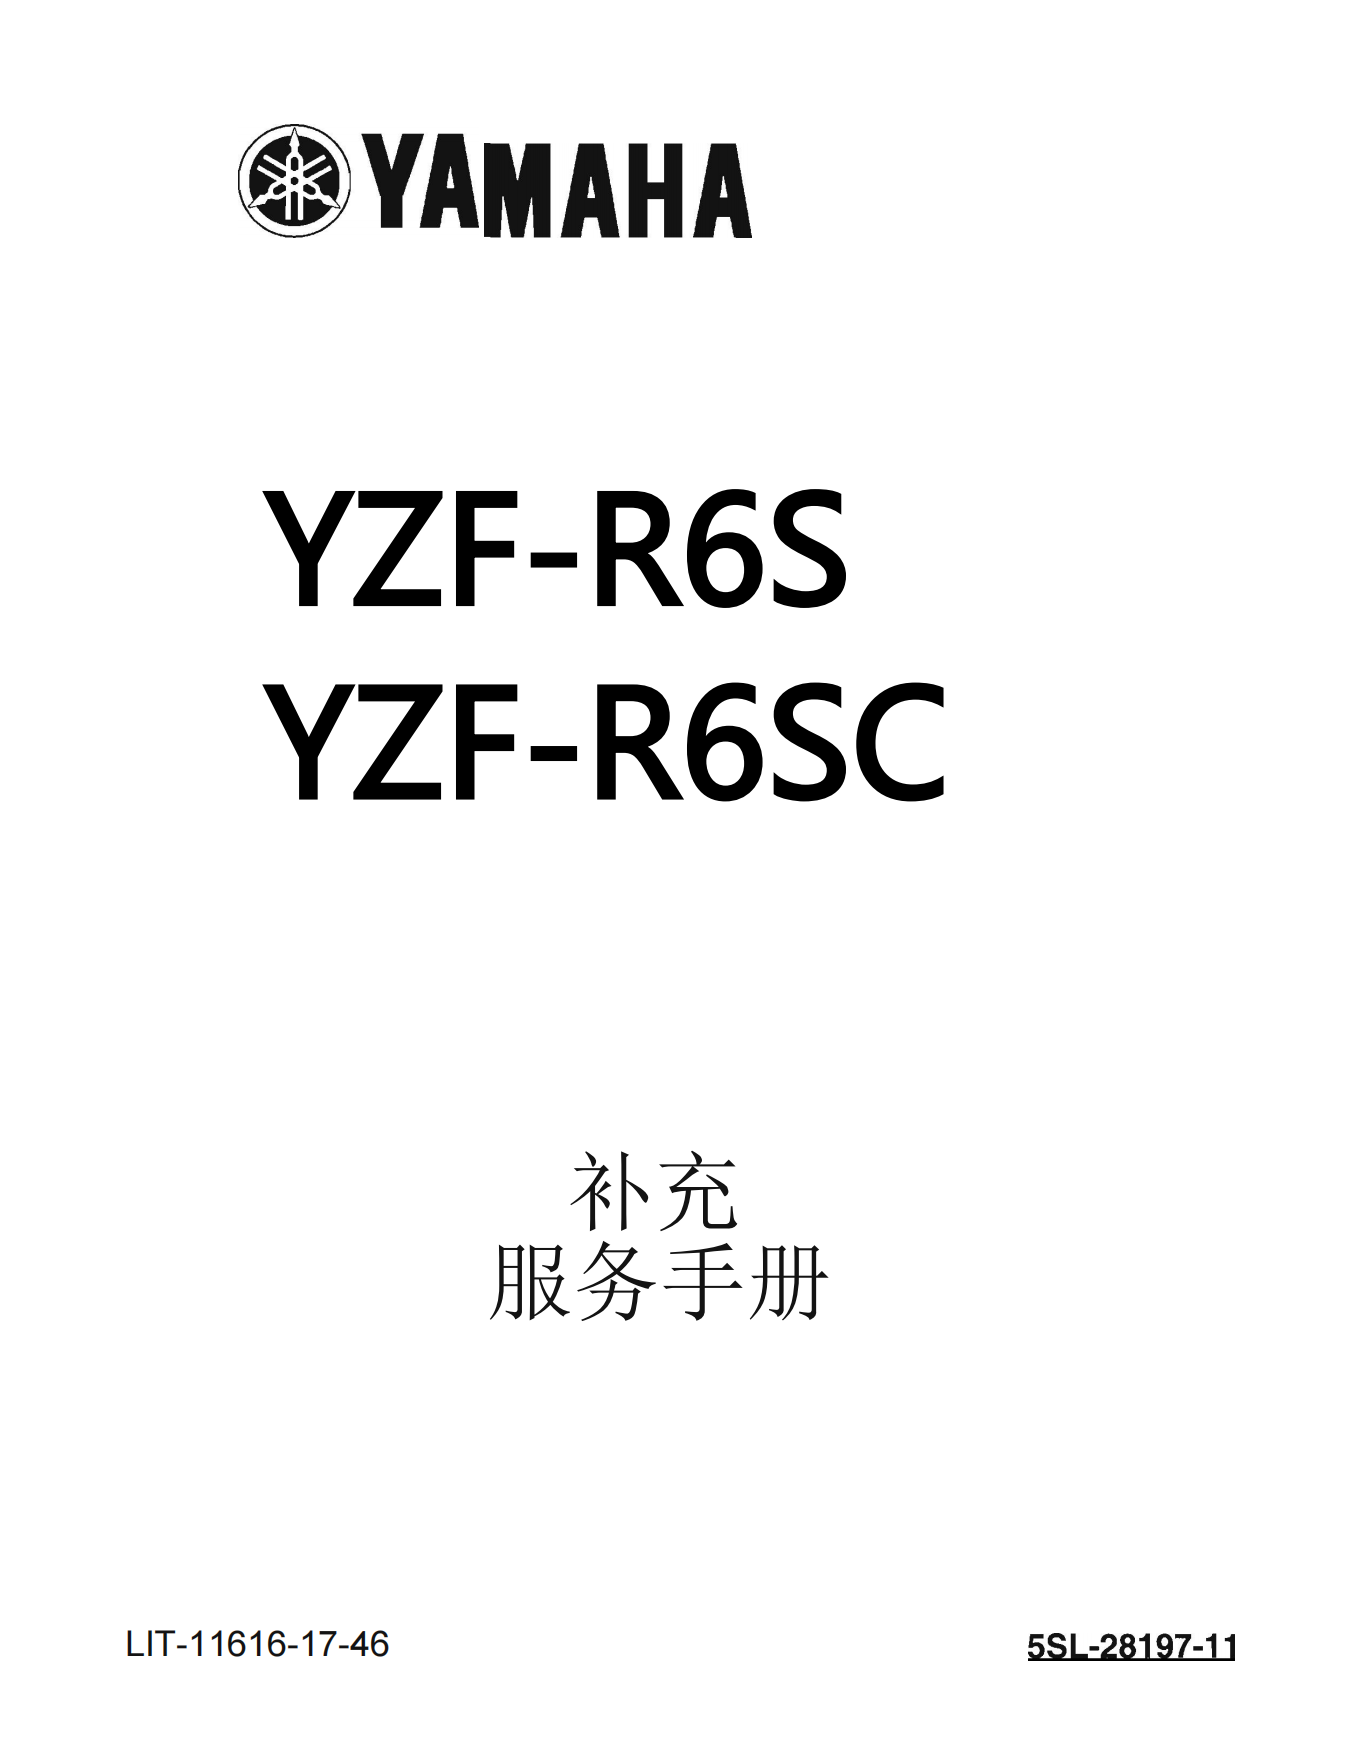 简体中文2004年雅马哈yzfr6雅马哈r6维修补充手册需要和2003-2005年雅马哈r6维修手册一起使用插图